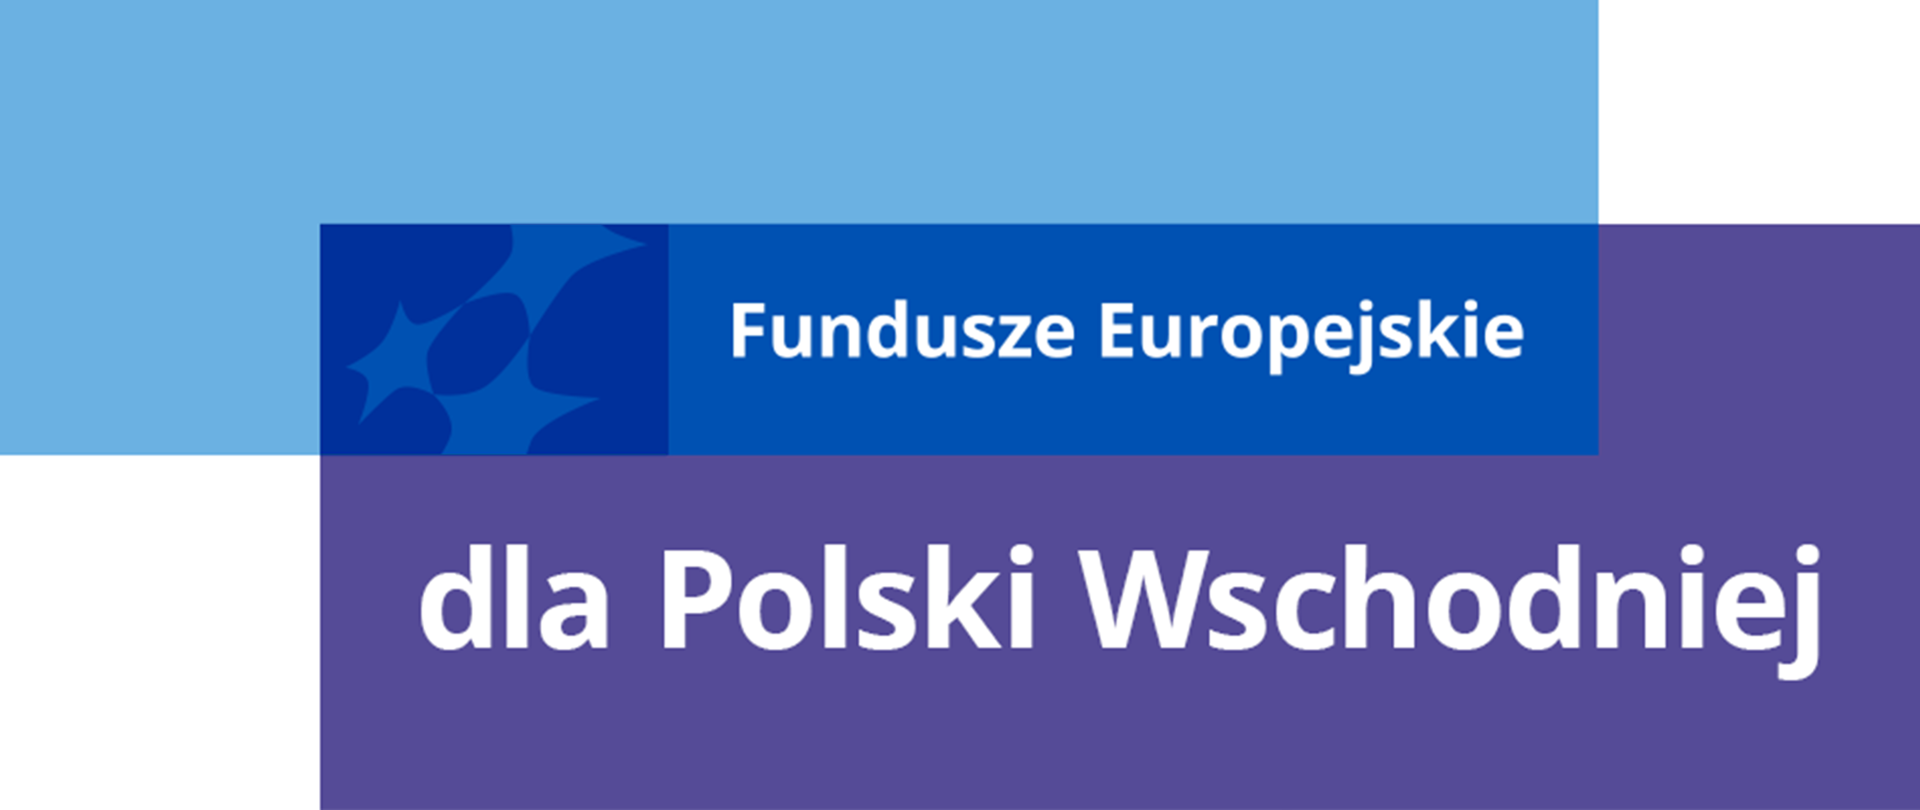 Logotyp Funduszy Europejskich i napis: "Fundusze Europejskie dla Polski Wschodniej"